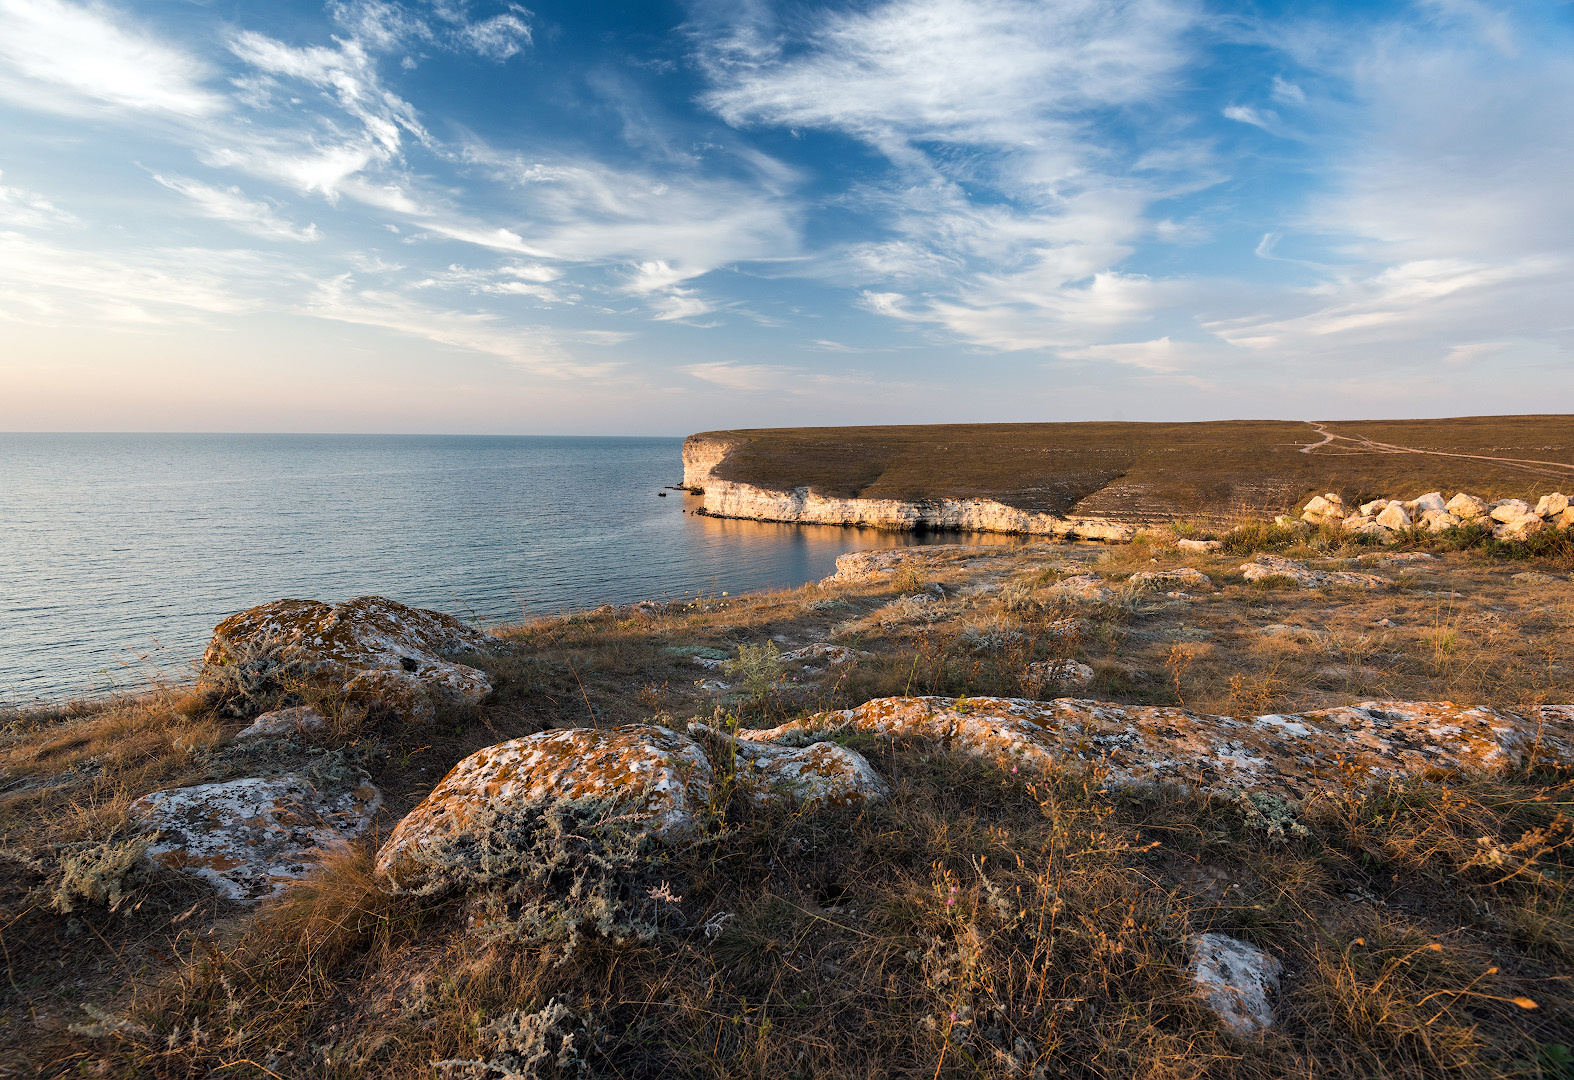 Мыс Тарханкут — самая западная точка Крымского полуострова, здесь расположен старинный маяк. Фото: Андрей Гусаченко, участник фотоконкурса РГО 